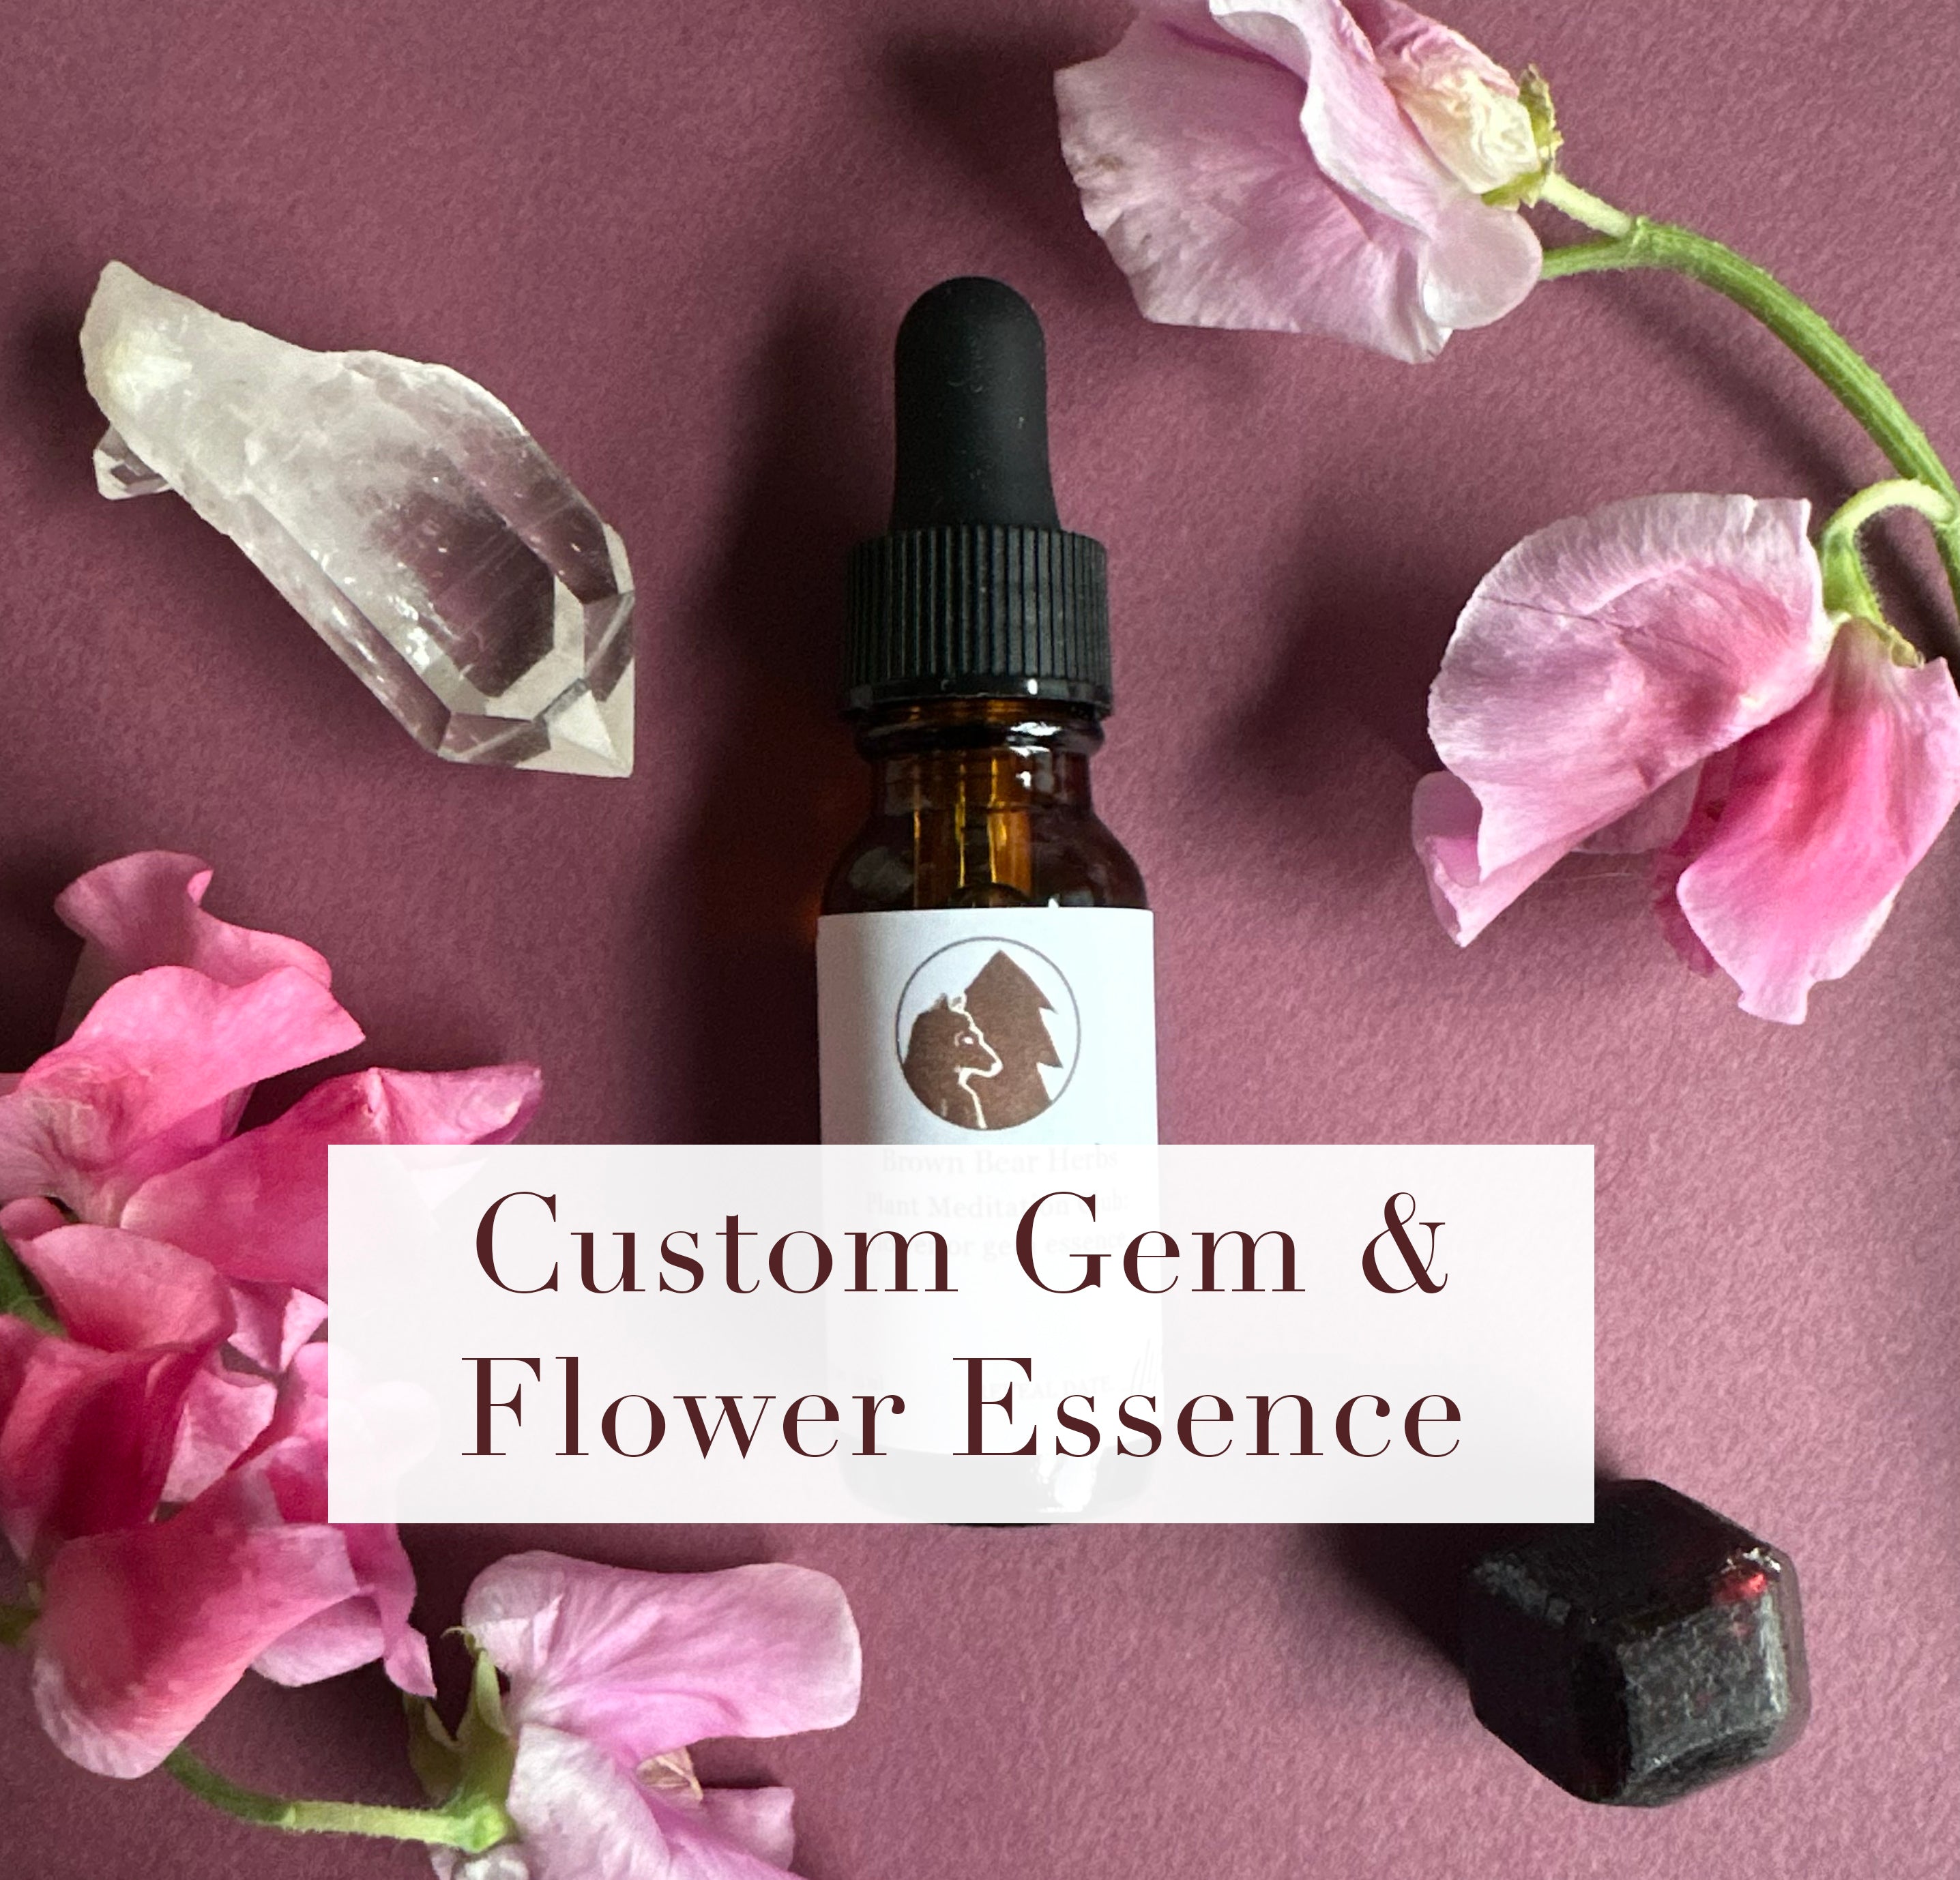 Custom Gem and Flower Essence Consultation